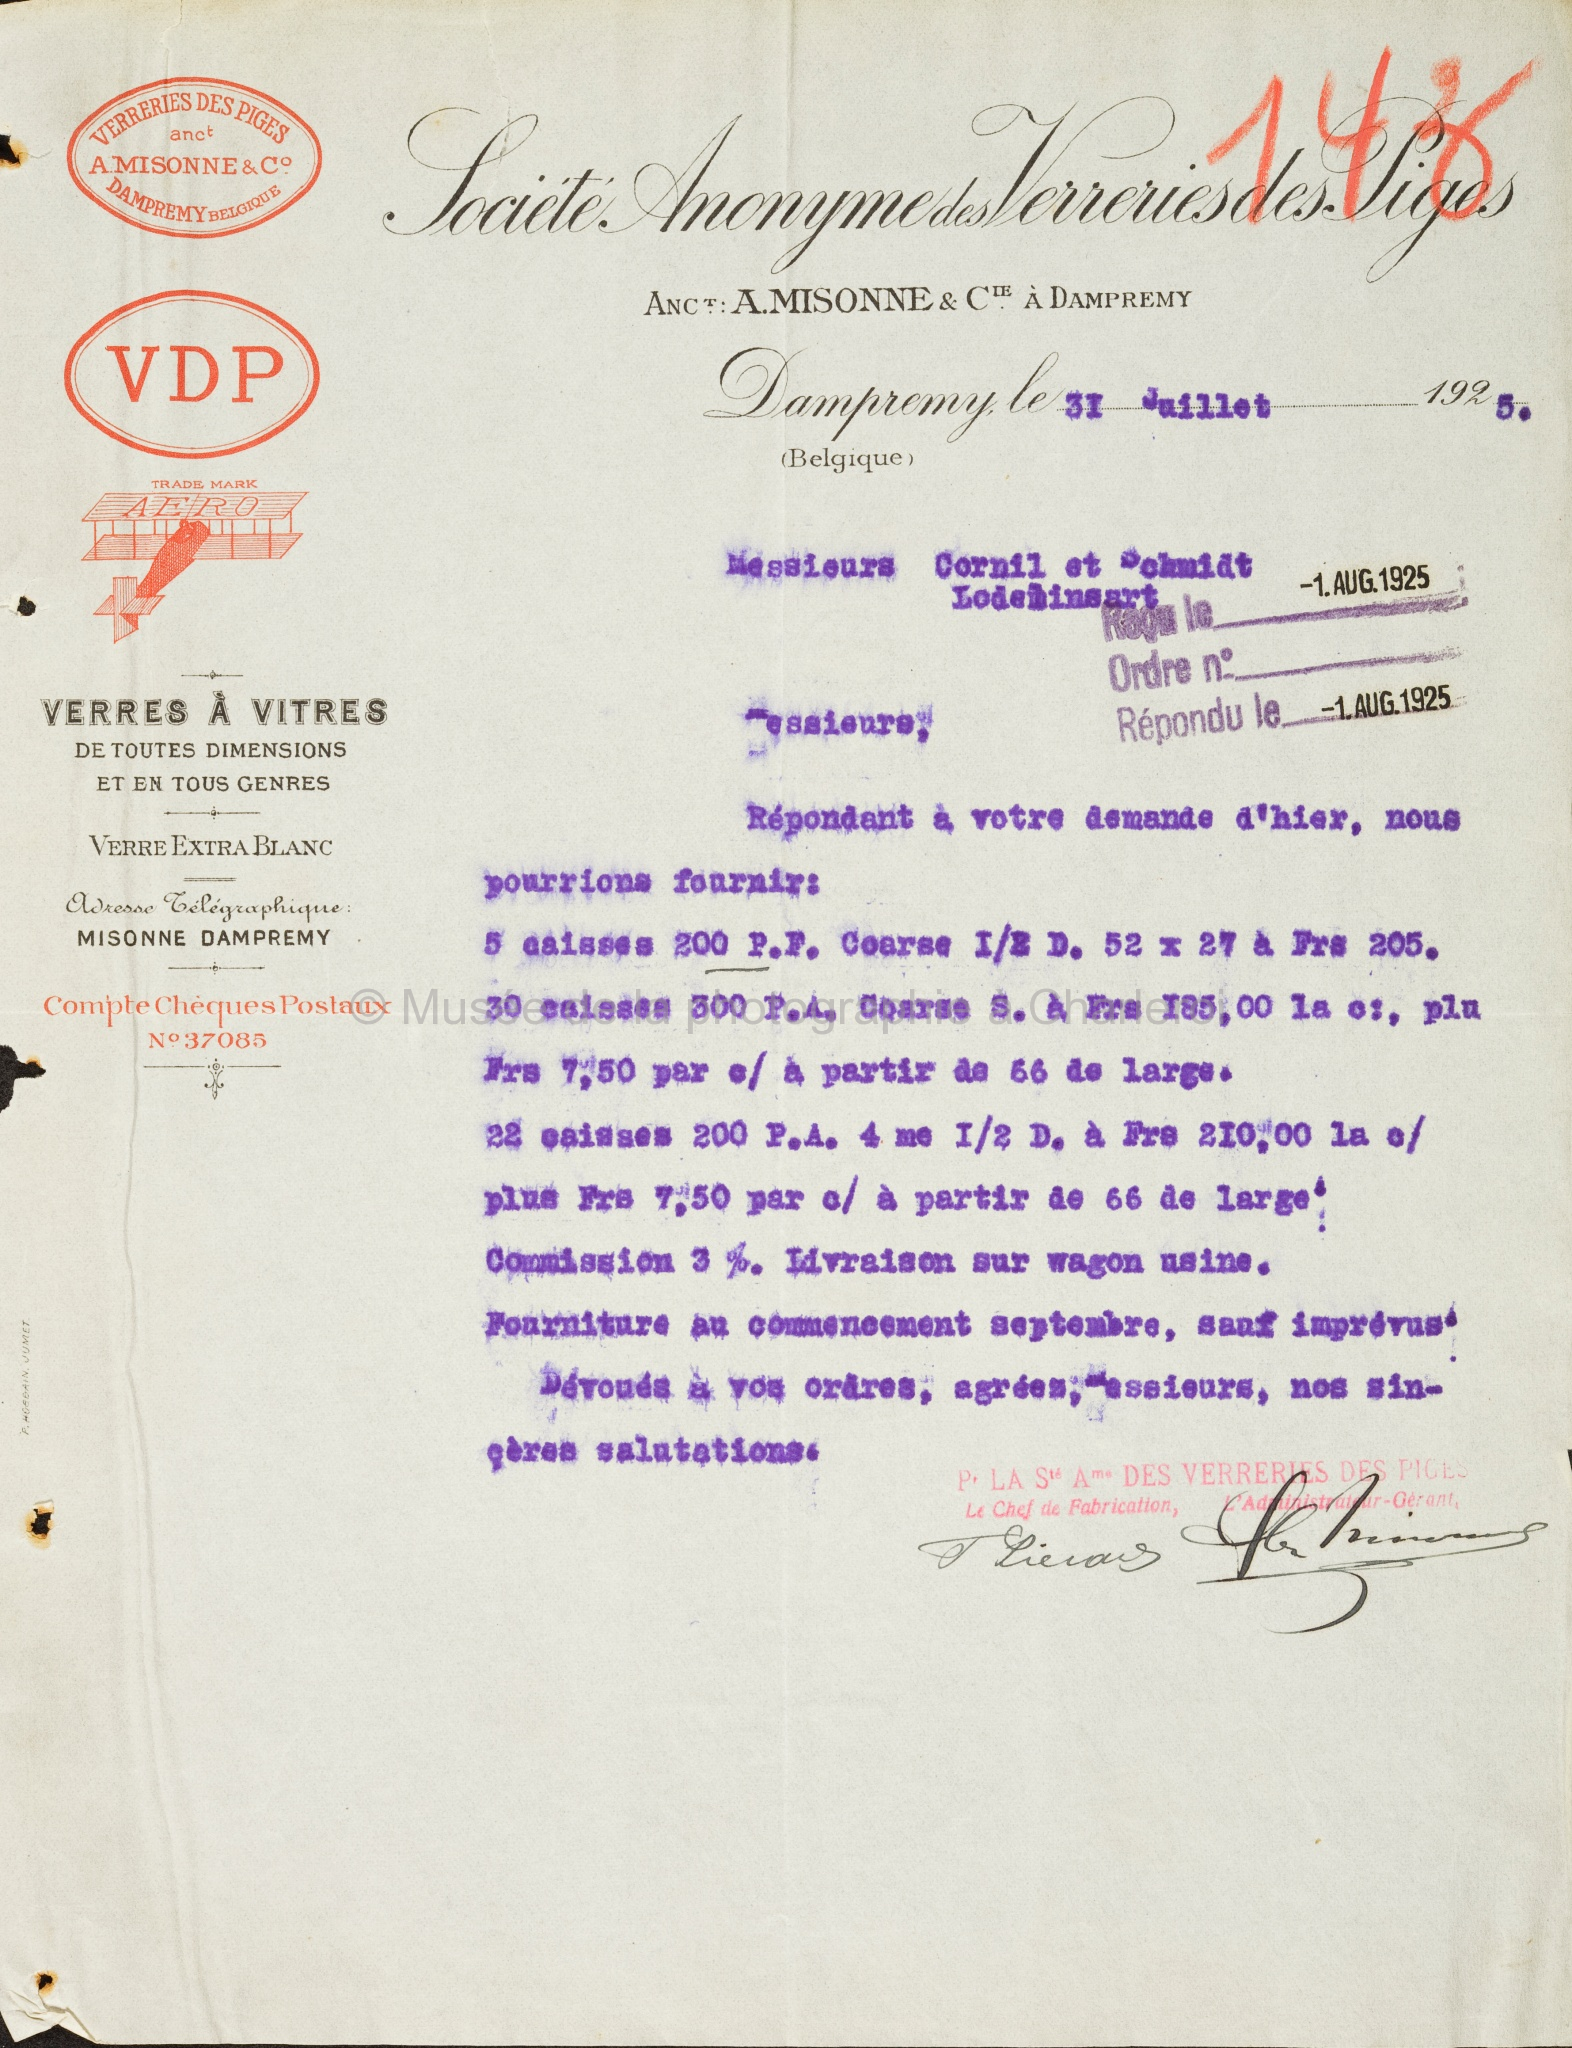 Remise de prix par lettre des verreries des Piges; à M. Cornil & Schmidt